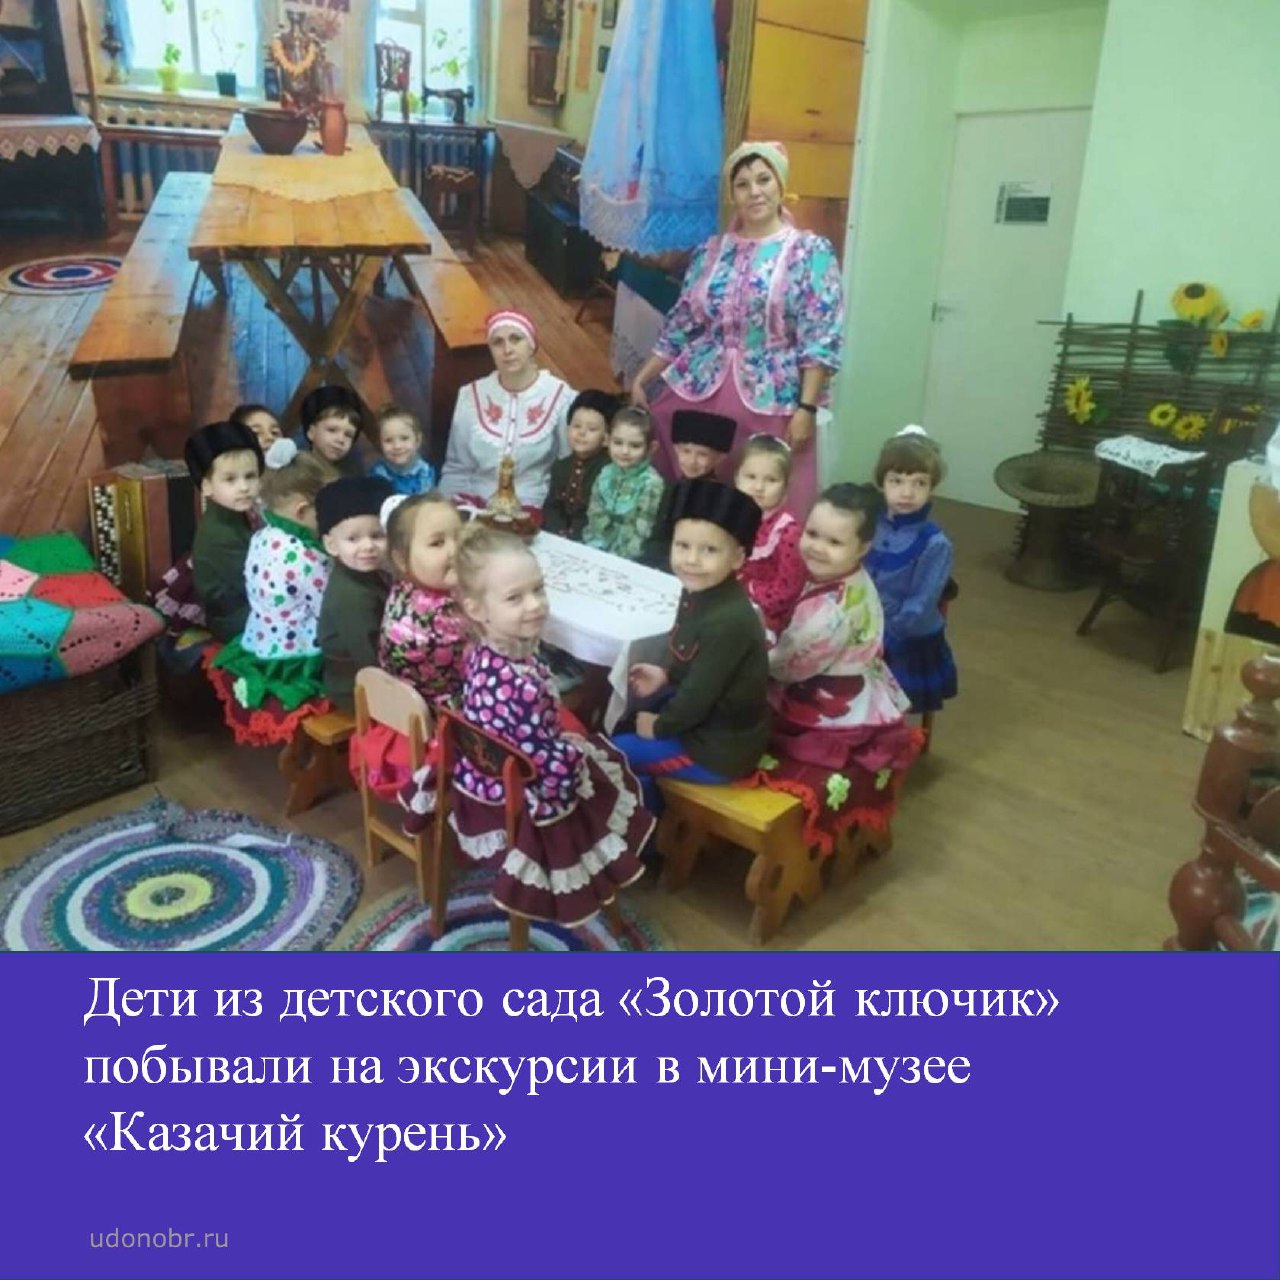 Дети из детского сада «Золотой ключик» побывали на экскурсии в мини-музее «Казачий курень»